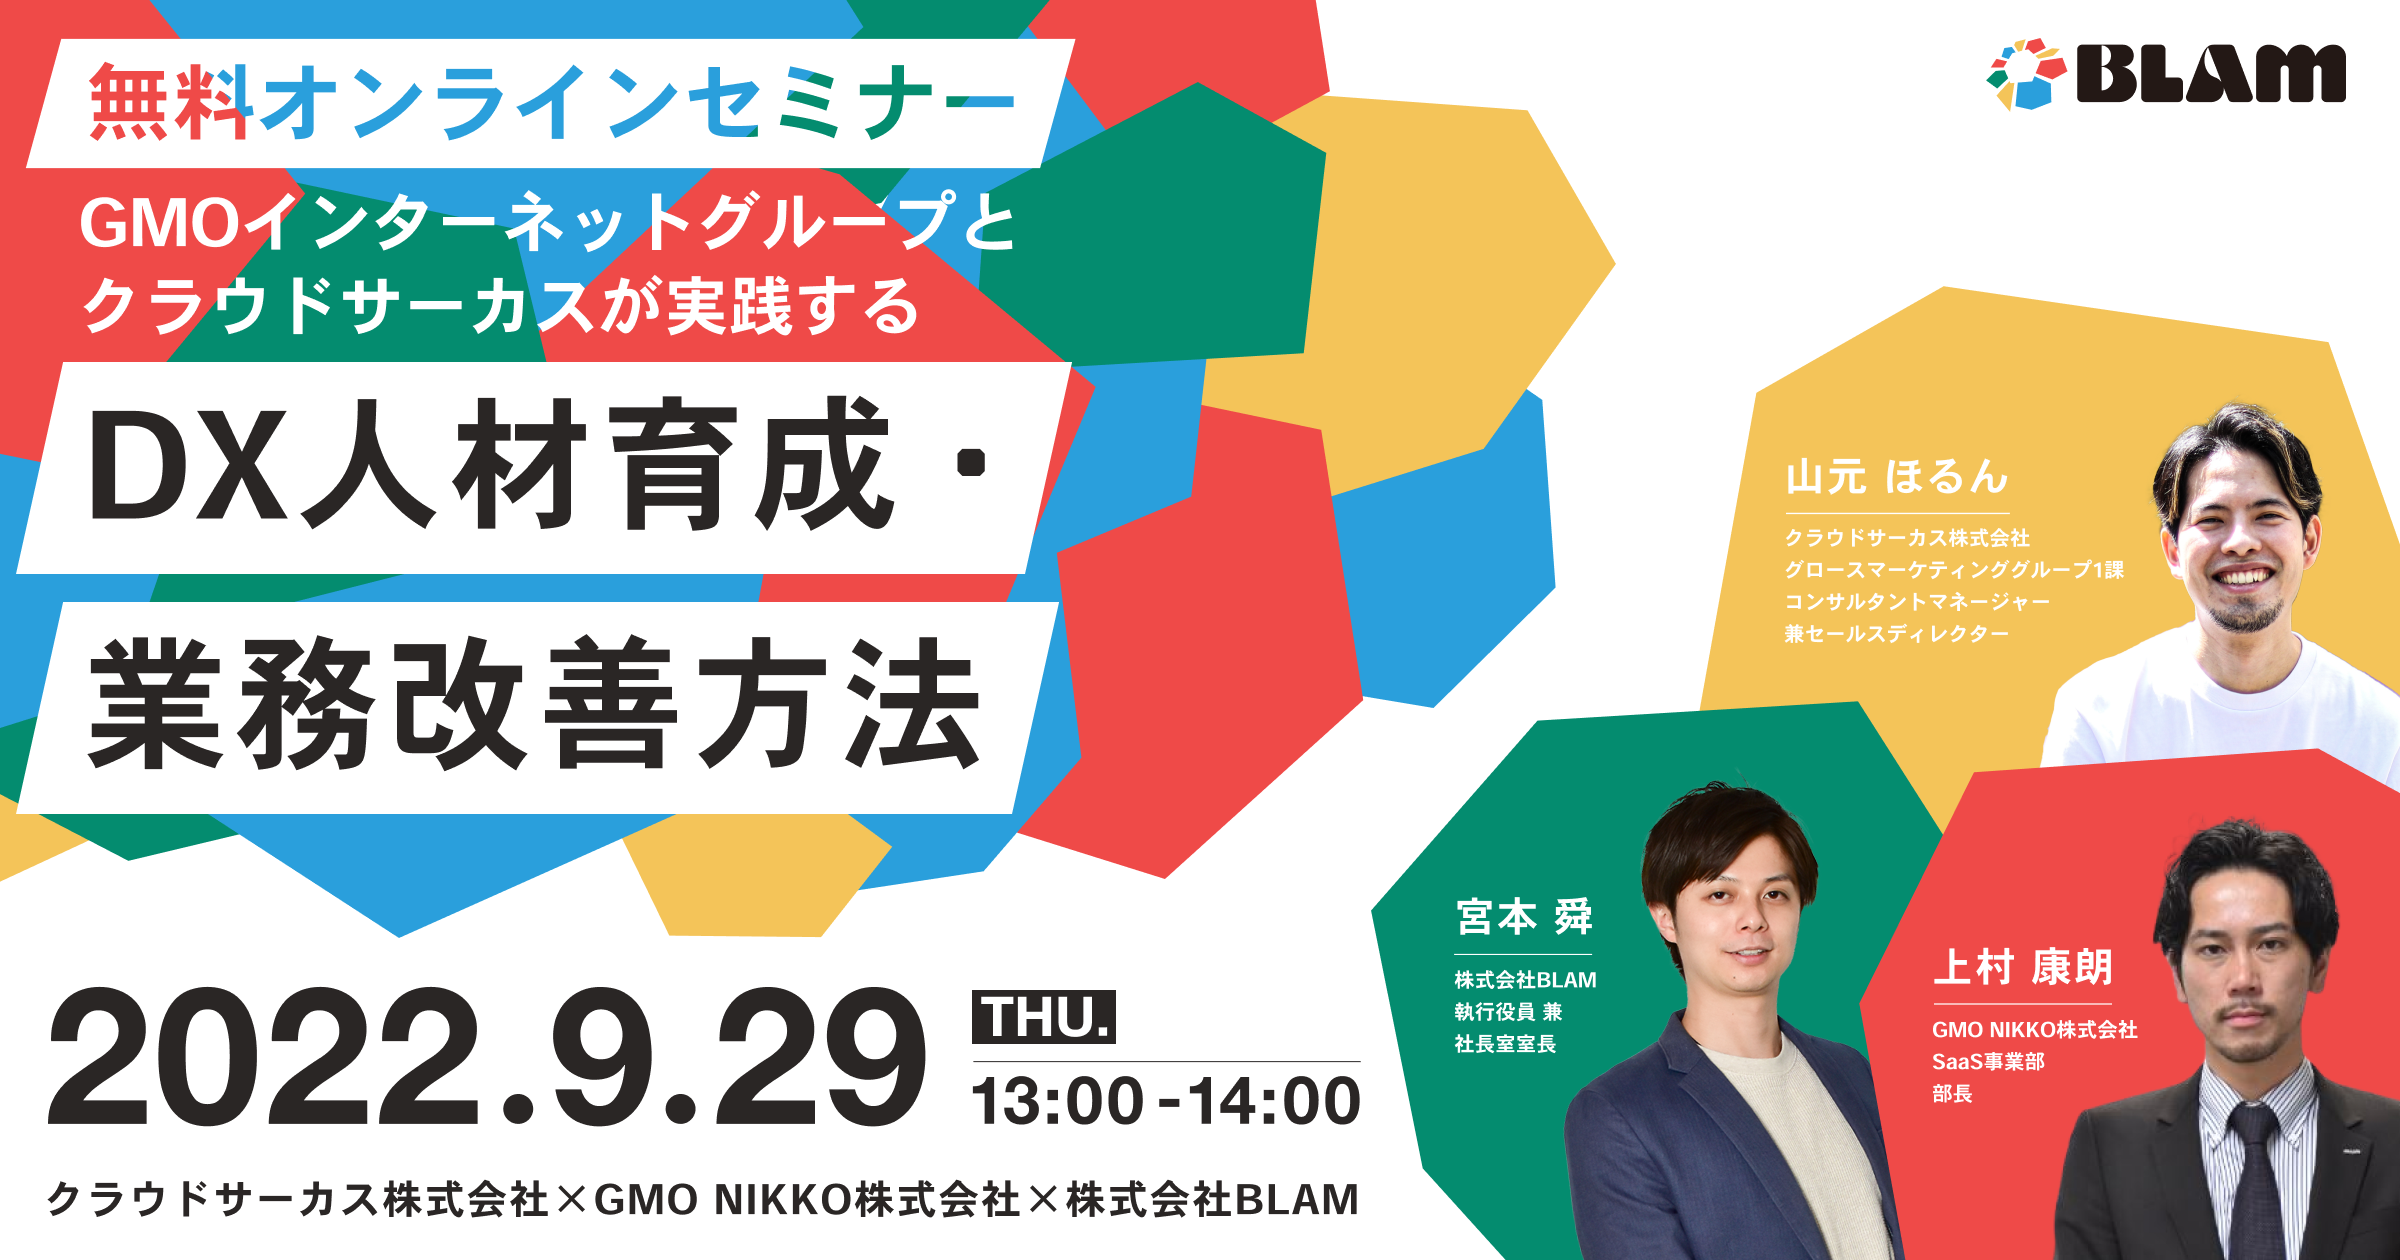 【9/29(木)】GMOインターネットグループとクラウドサーカスが実践する DX人材育成・業務改善方法